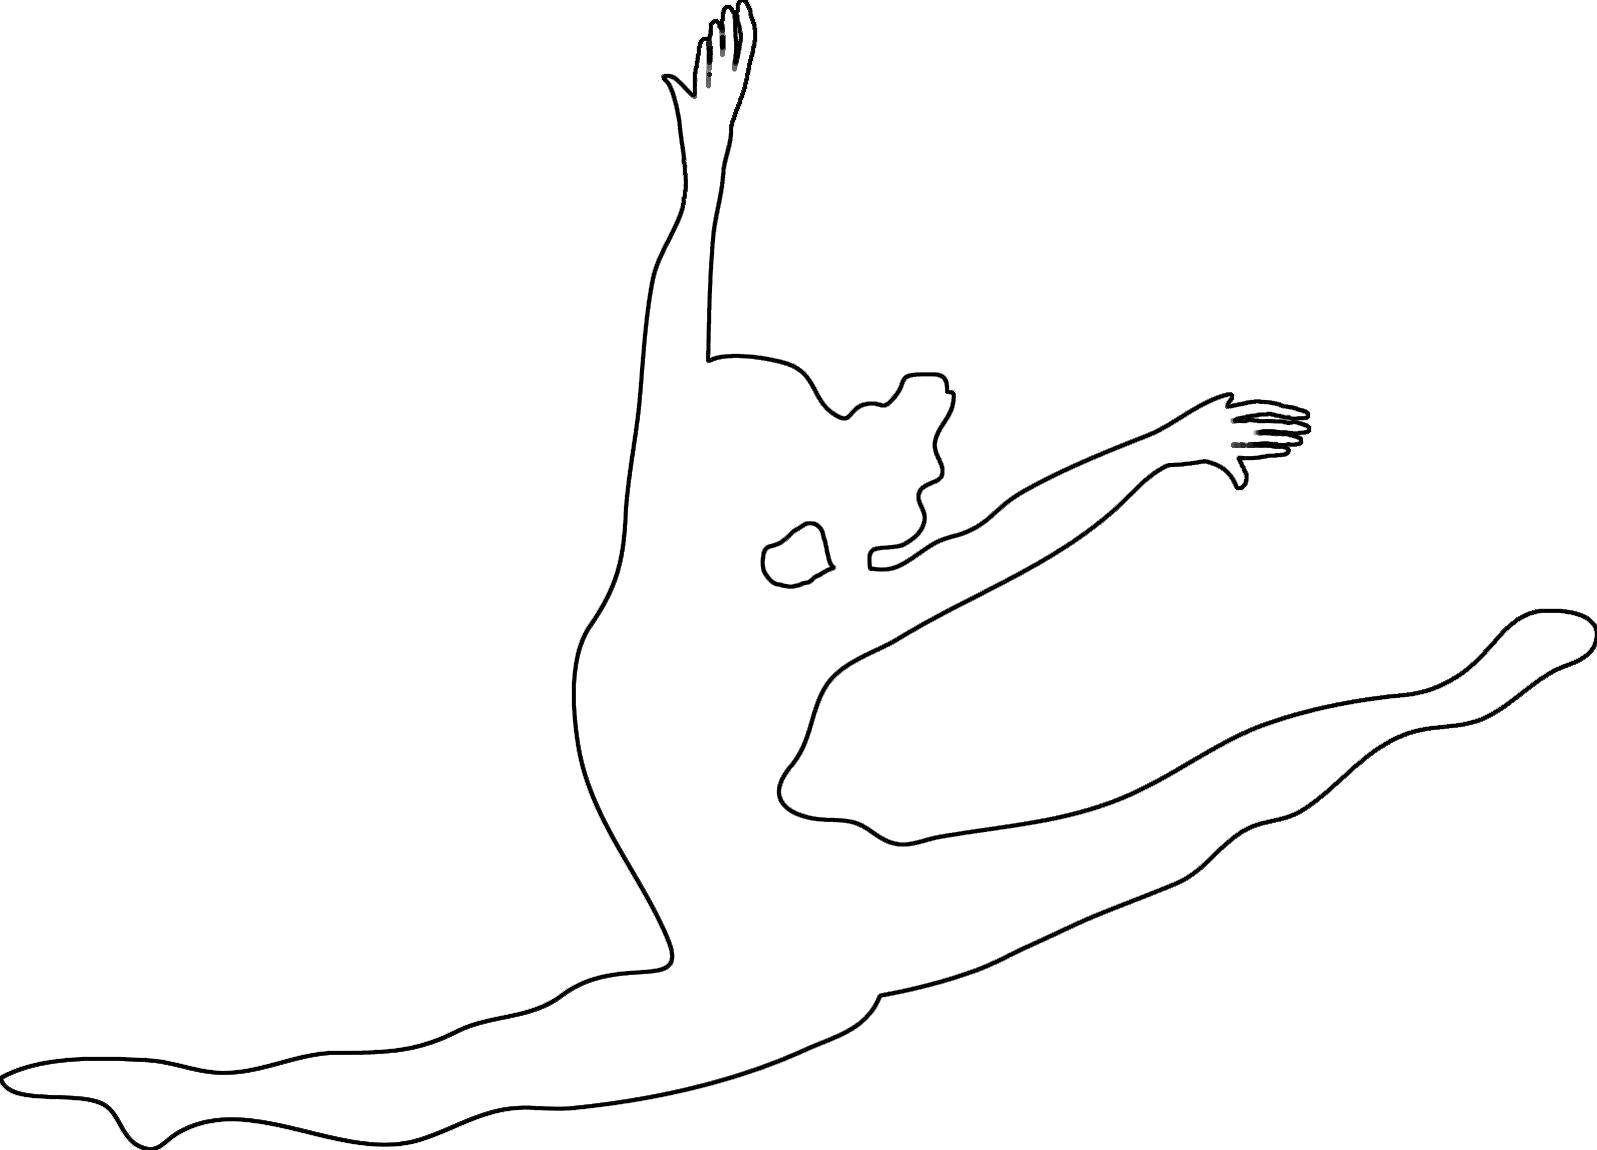 Раскраска Раскраски шаблоны балерин балерина в полете контур для вырезания из бумаги. Шаблон